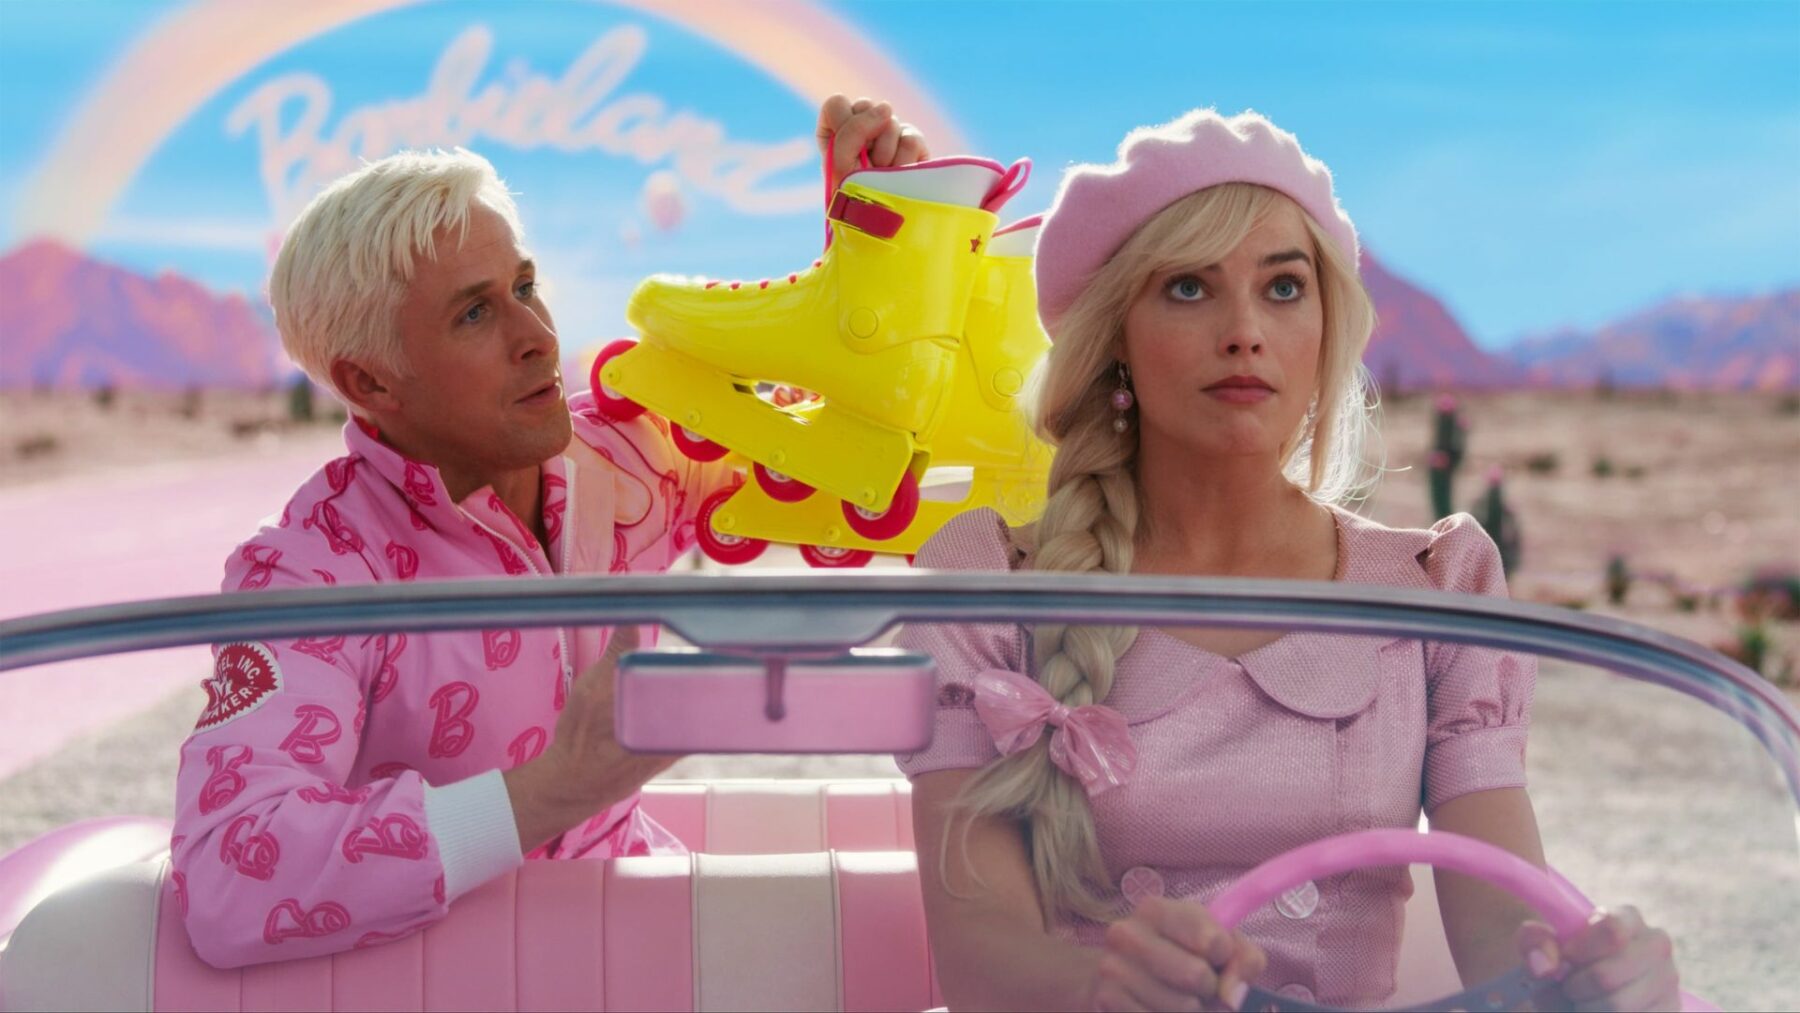 Ken i Barbie w różowym samochodzie, chłopak wręcza dziewczynie wrotki.